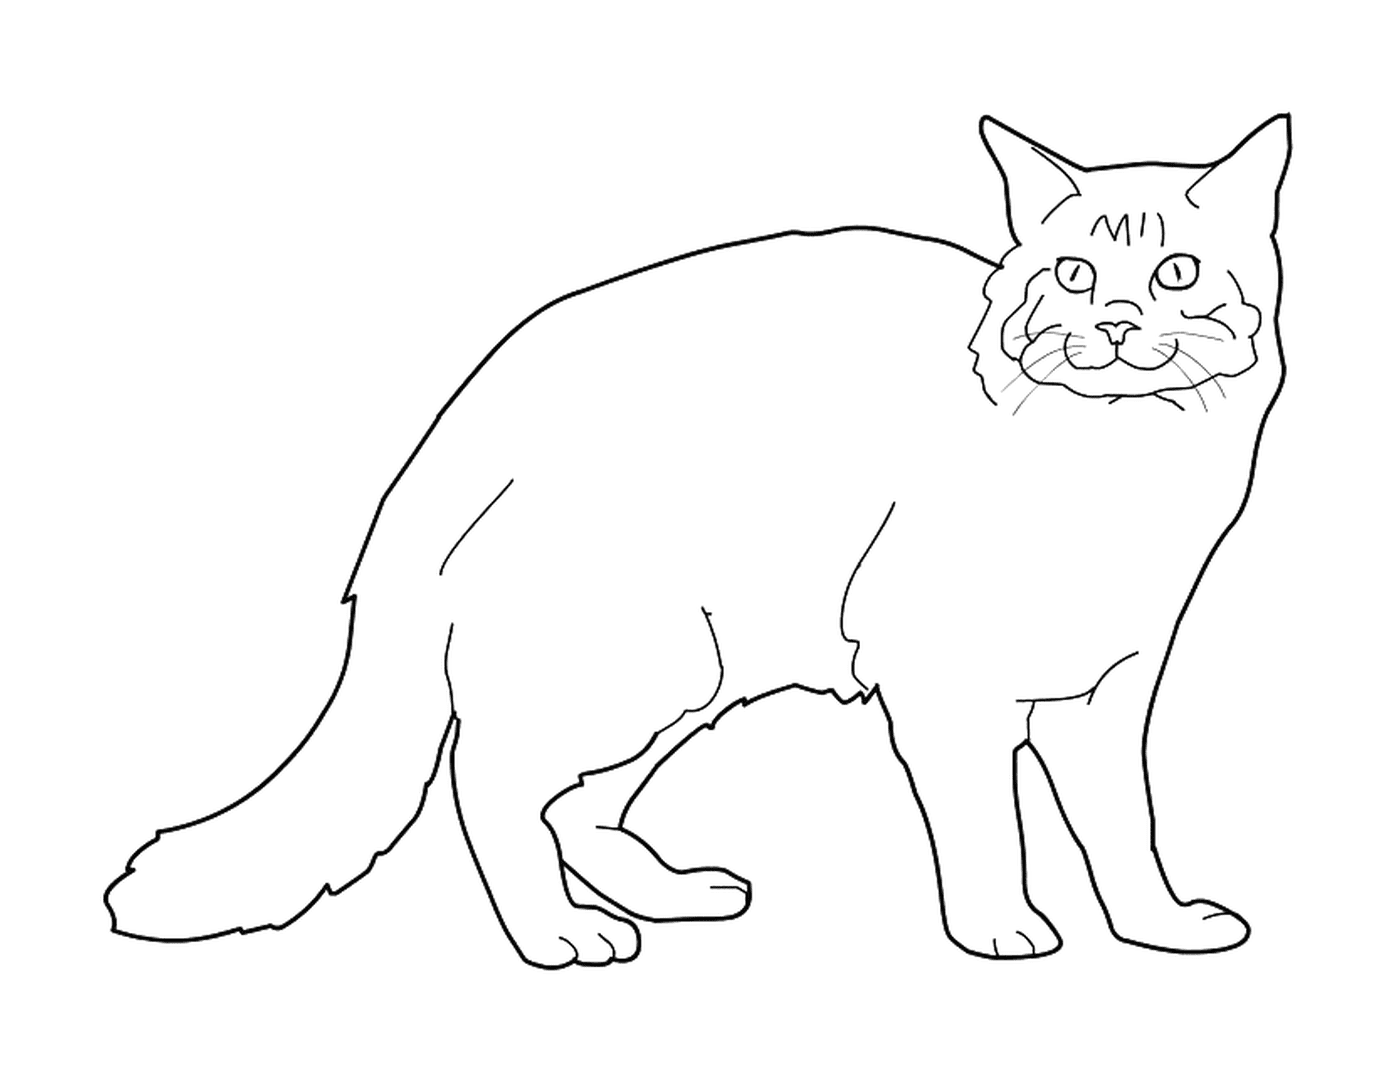  Мэн Кун, большая, длинноволосая кошка 